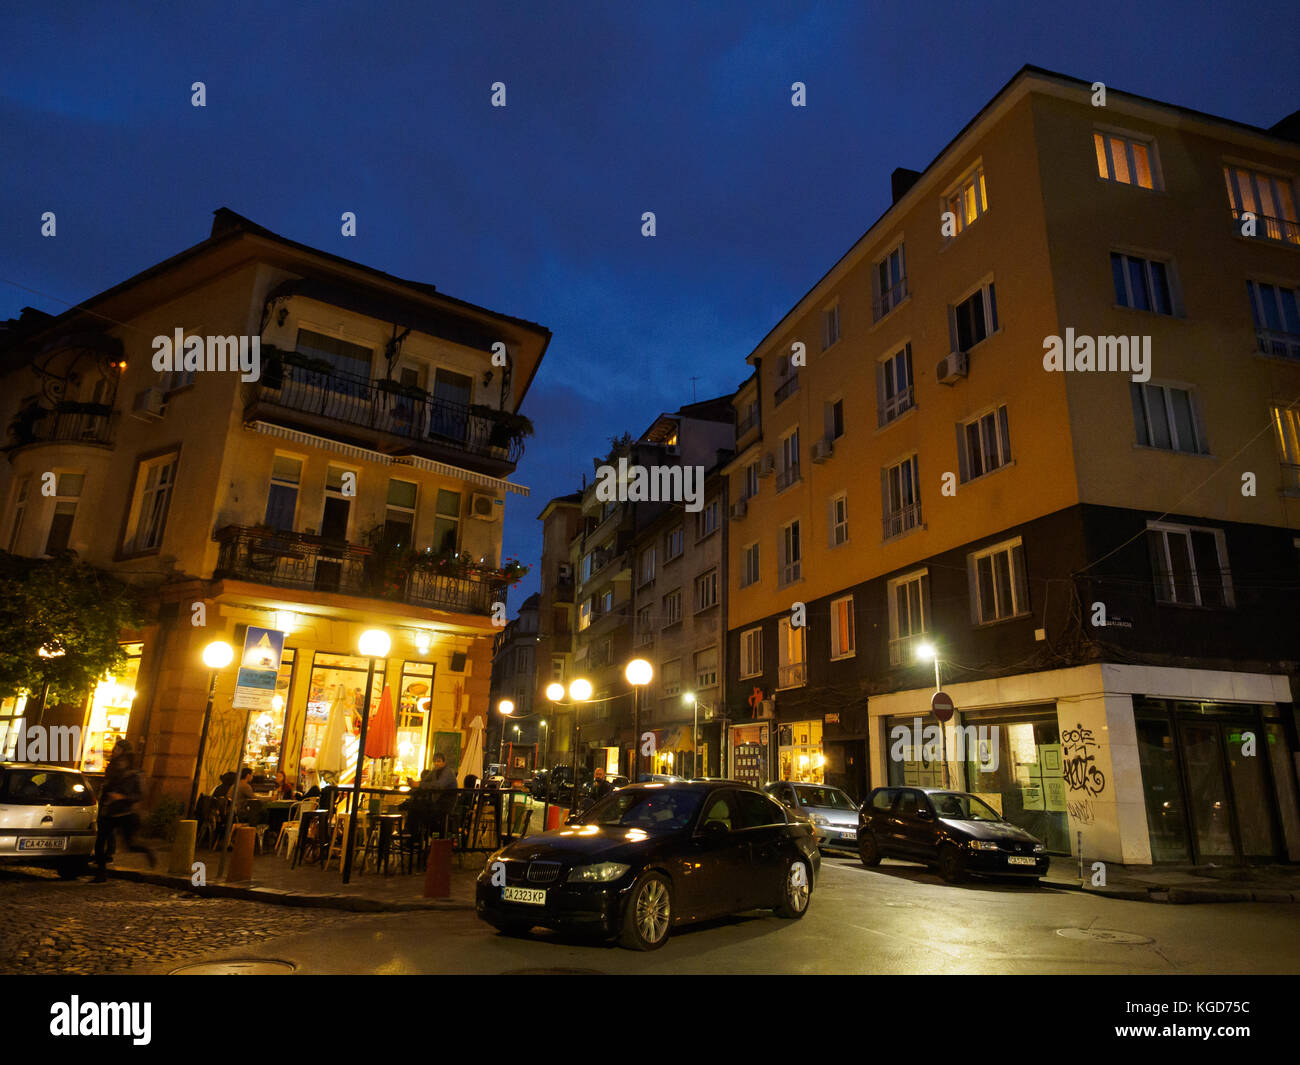 La esquina de una calle en Sofía, Bulgaria, antes de caer la noche. Foto de stock